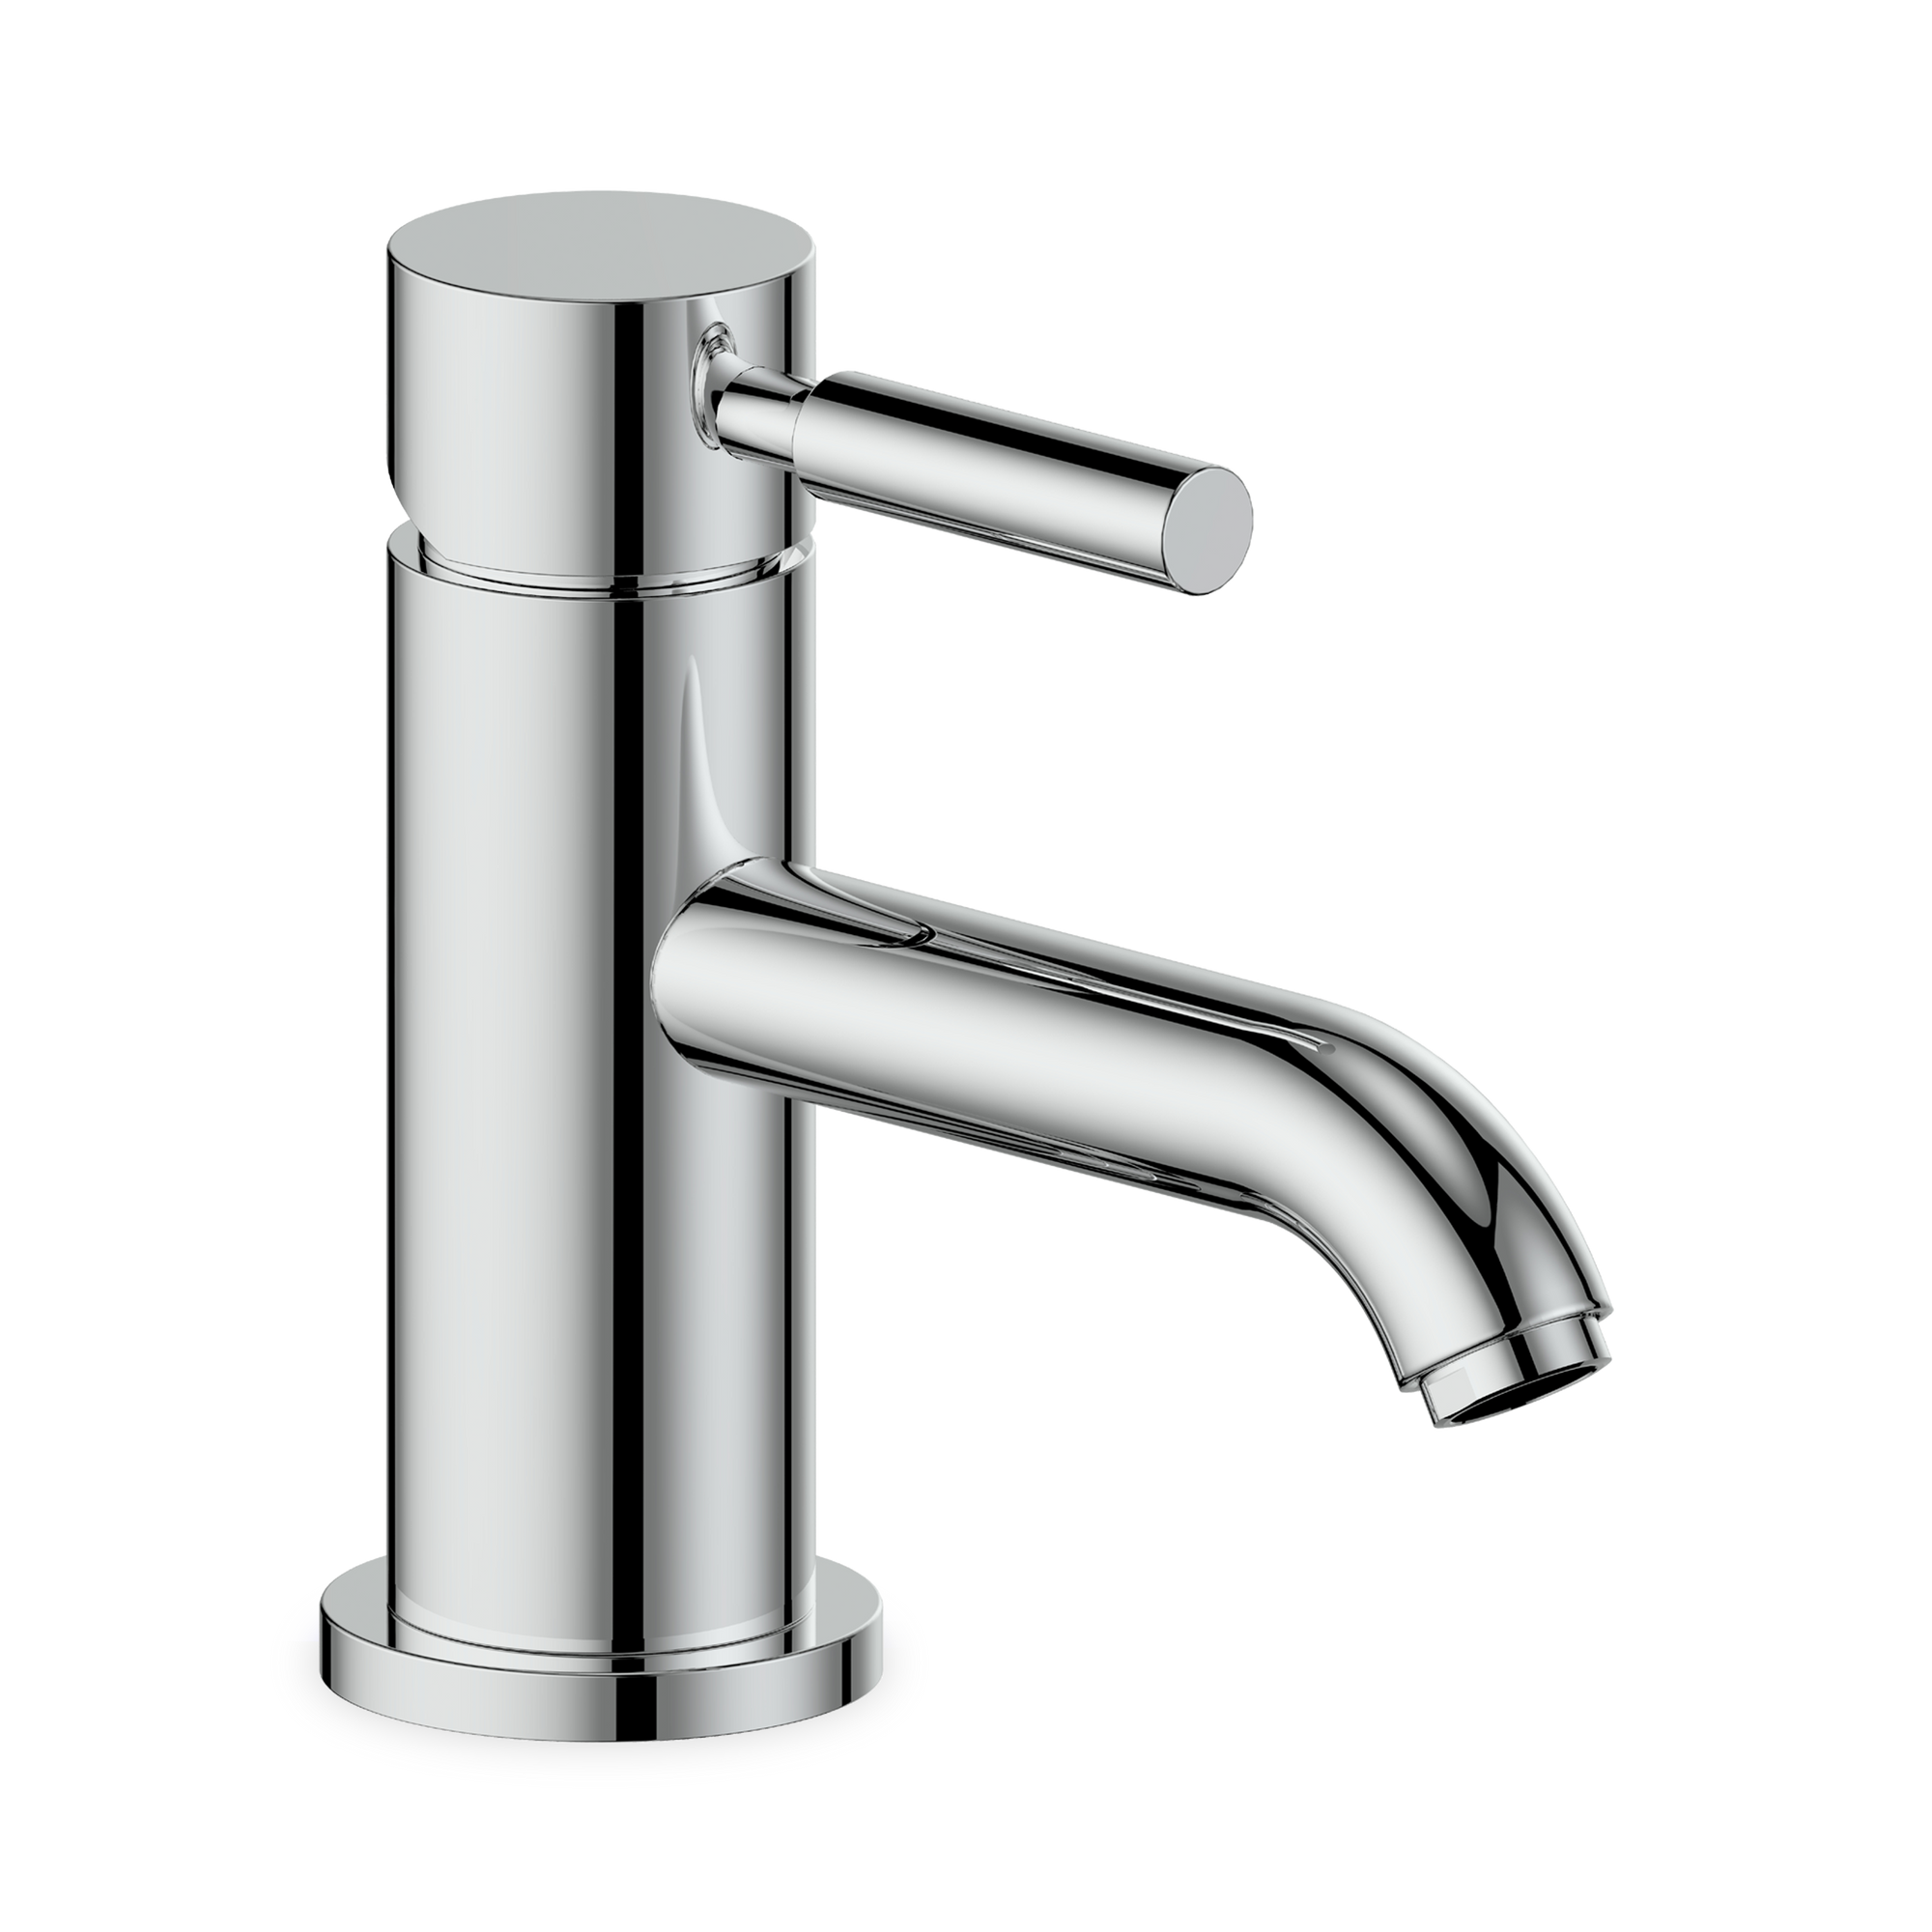 A single hole basin faucet.